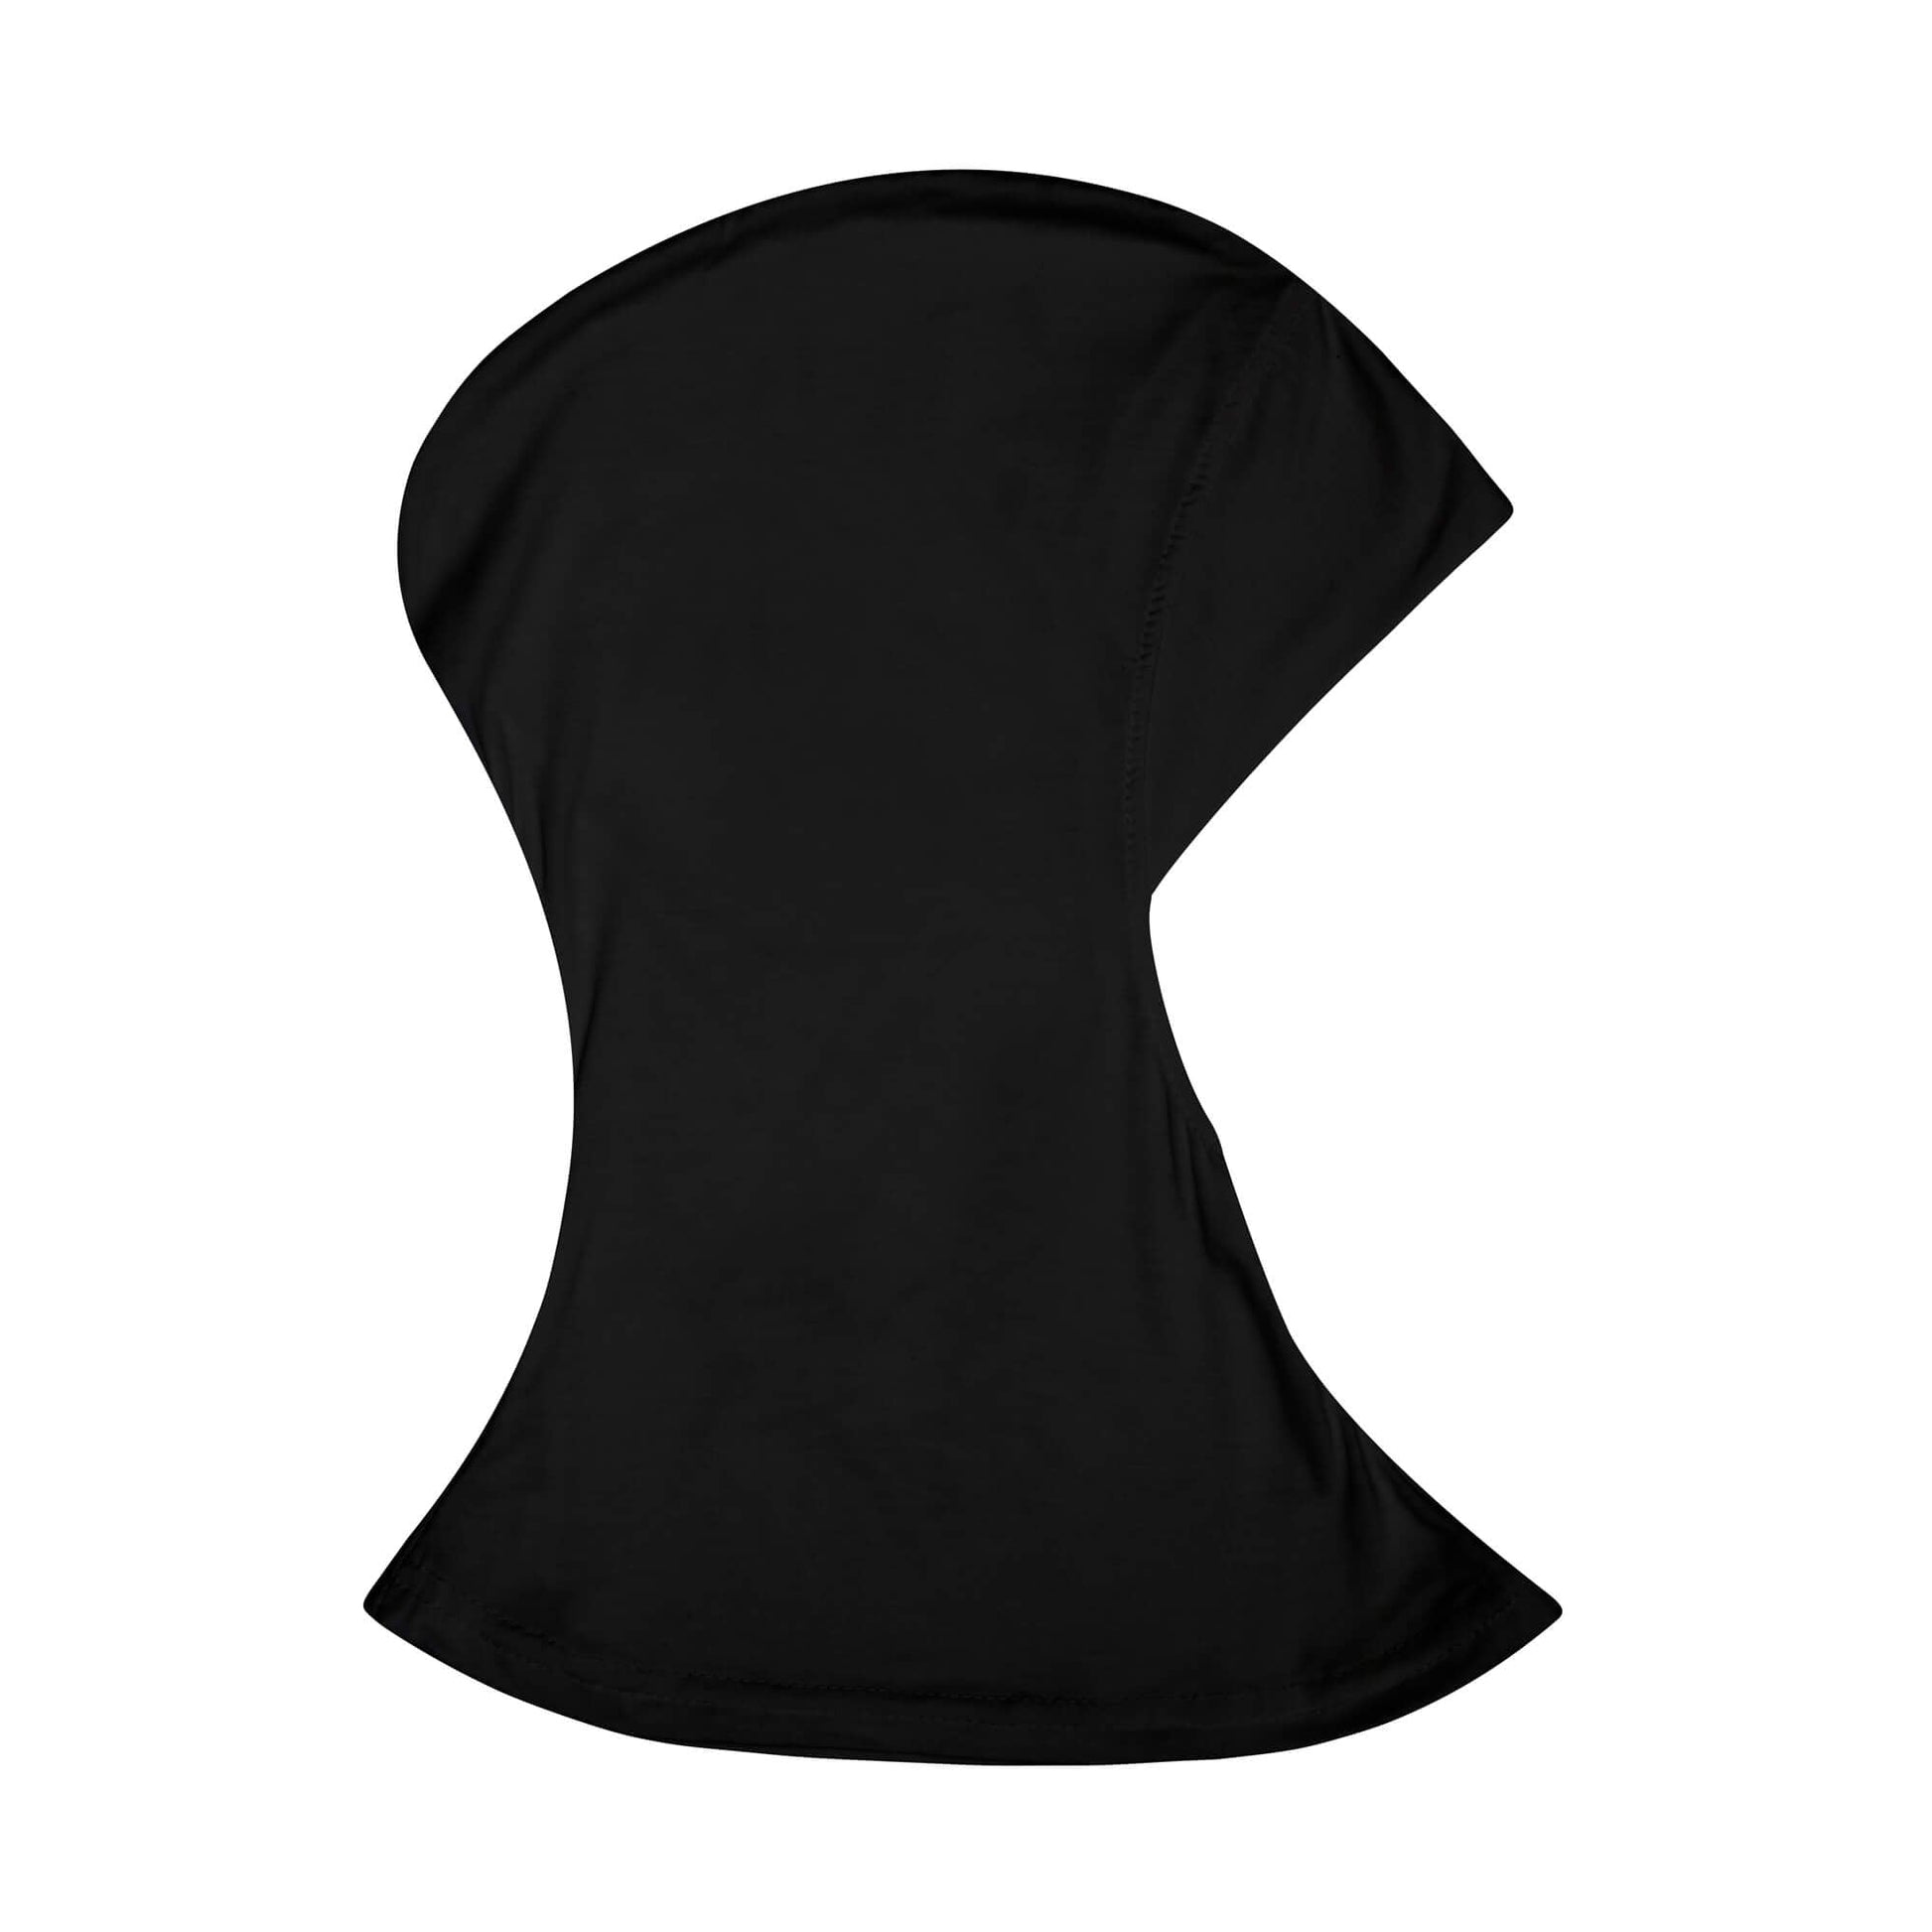 The Black Ninja Hijab Cap